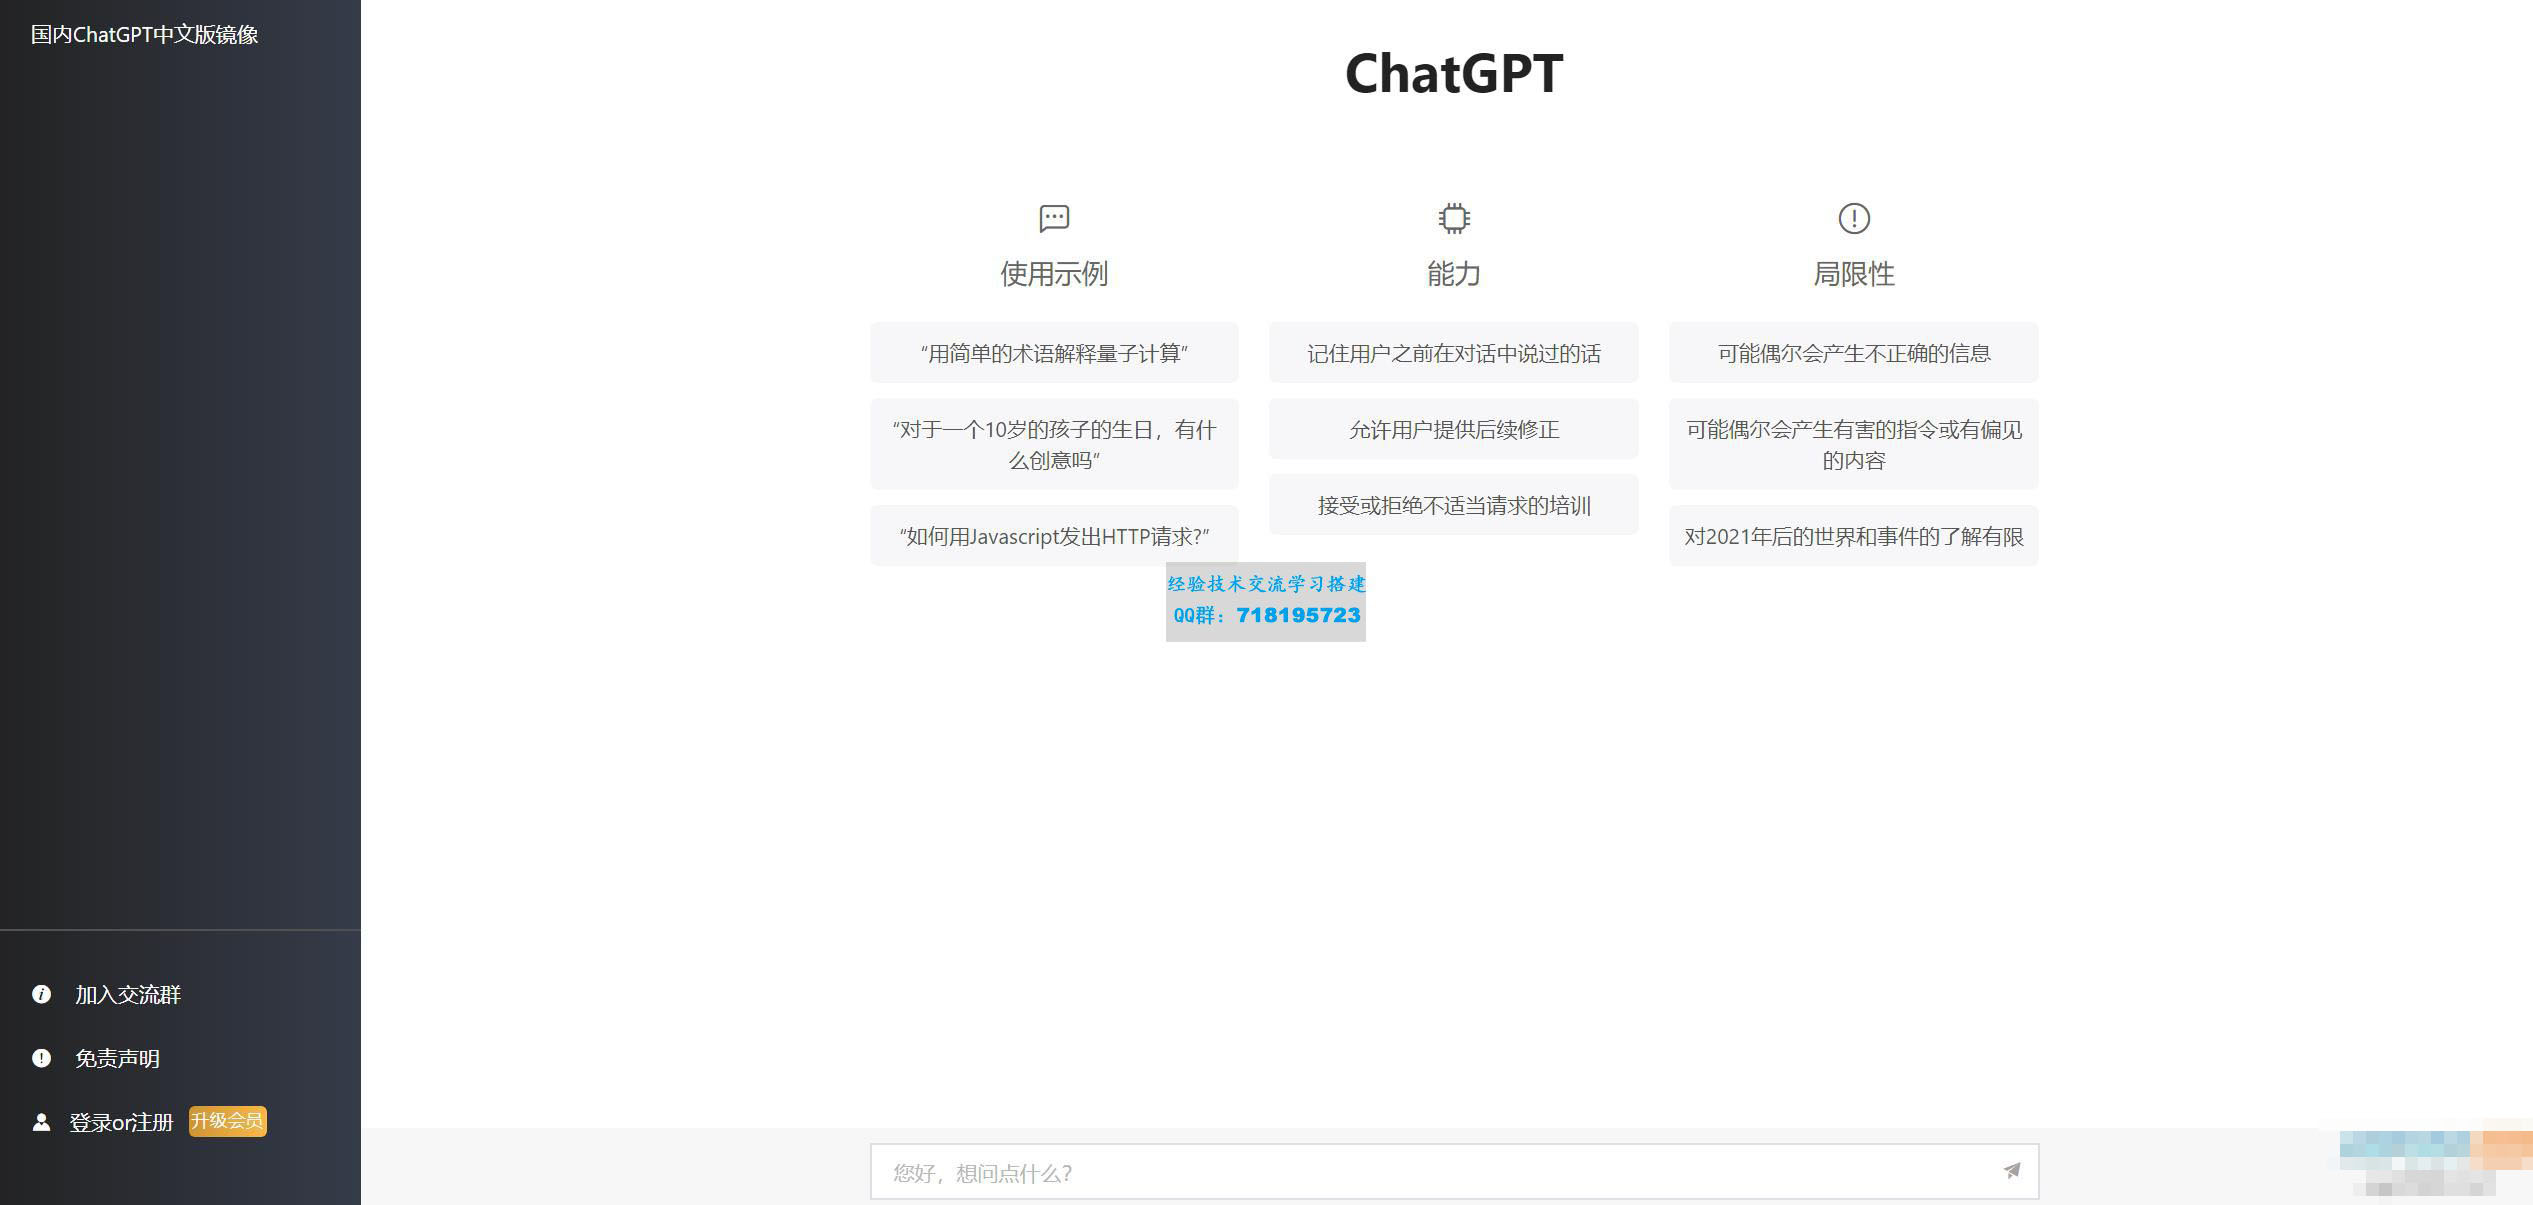     最新ChatGPT网站源码 支持用户付费套餐+赚取收益
